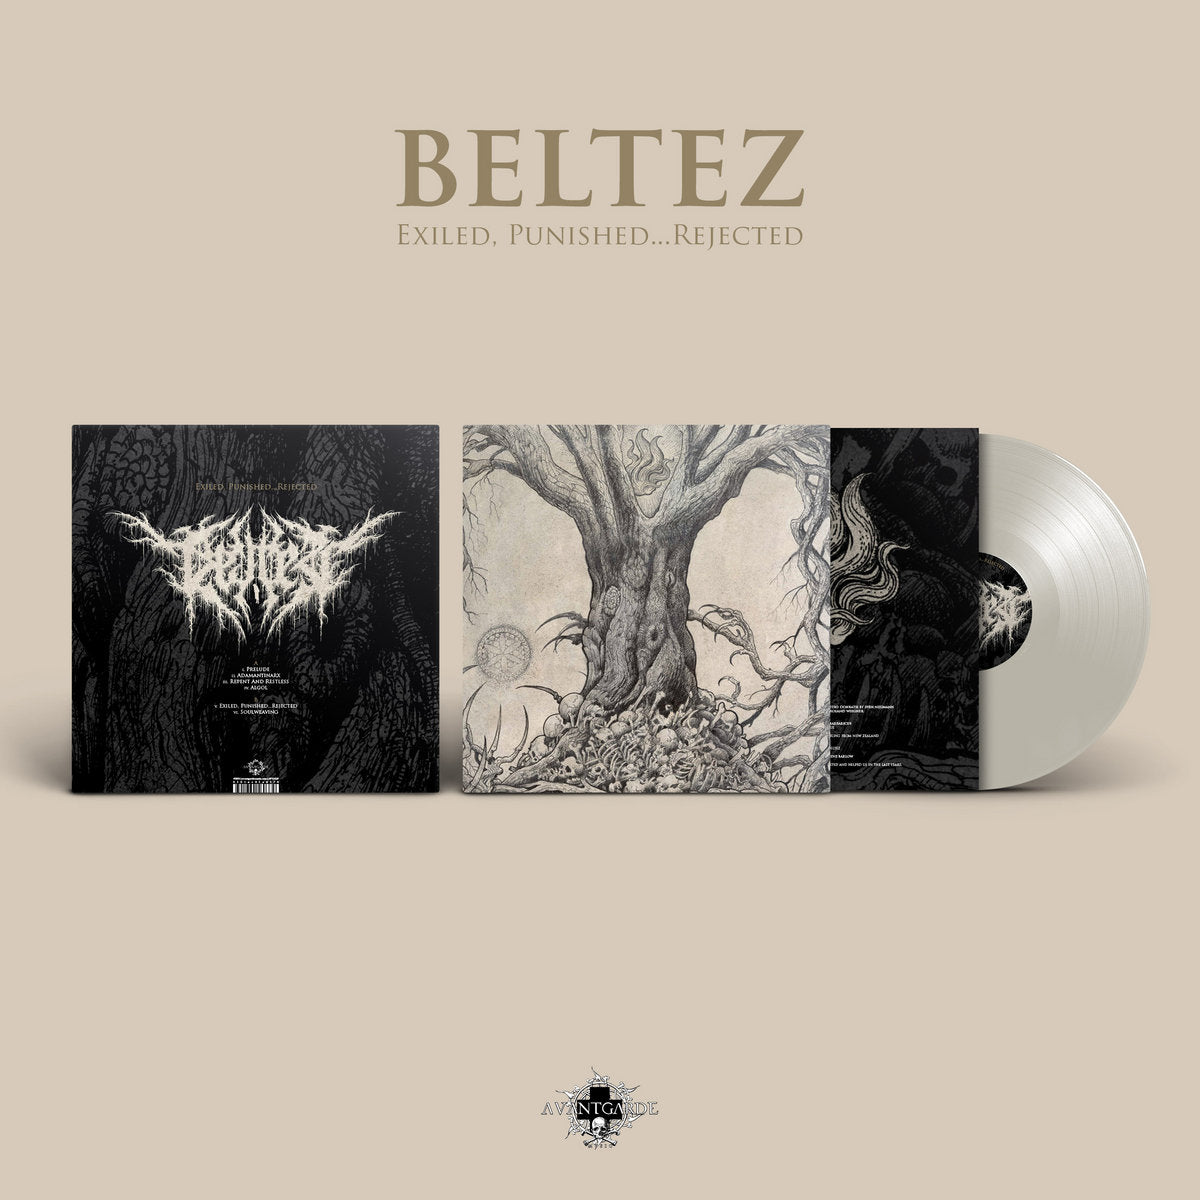 [SOLD OUT] BELTEZ "Exiled, Punished... Rejected" Vinyl LP (color)